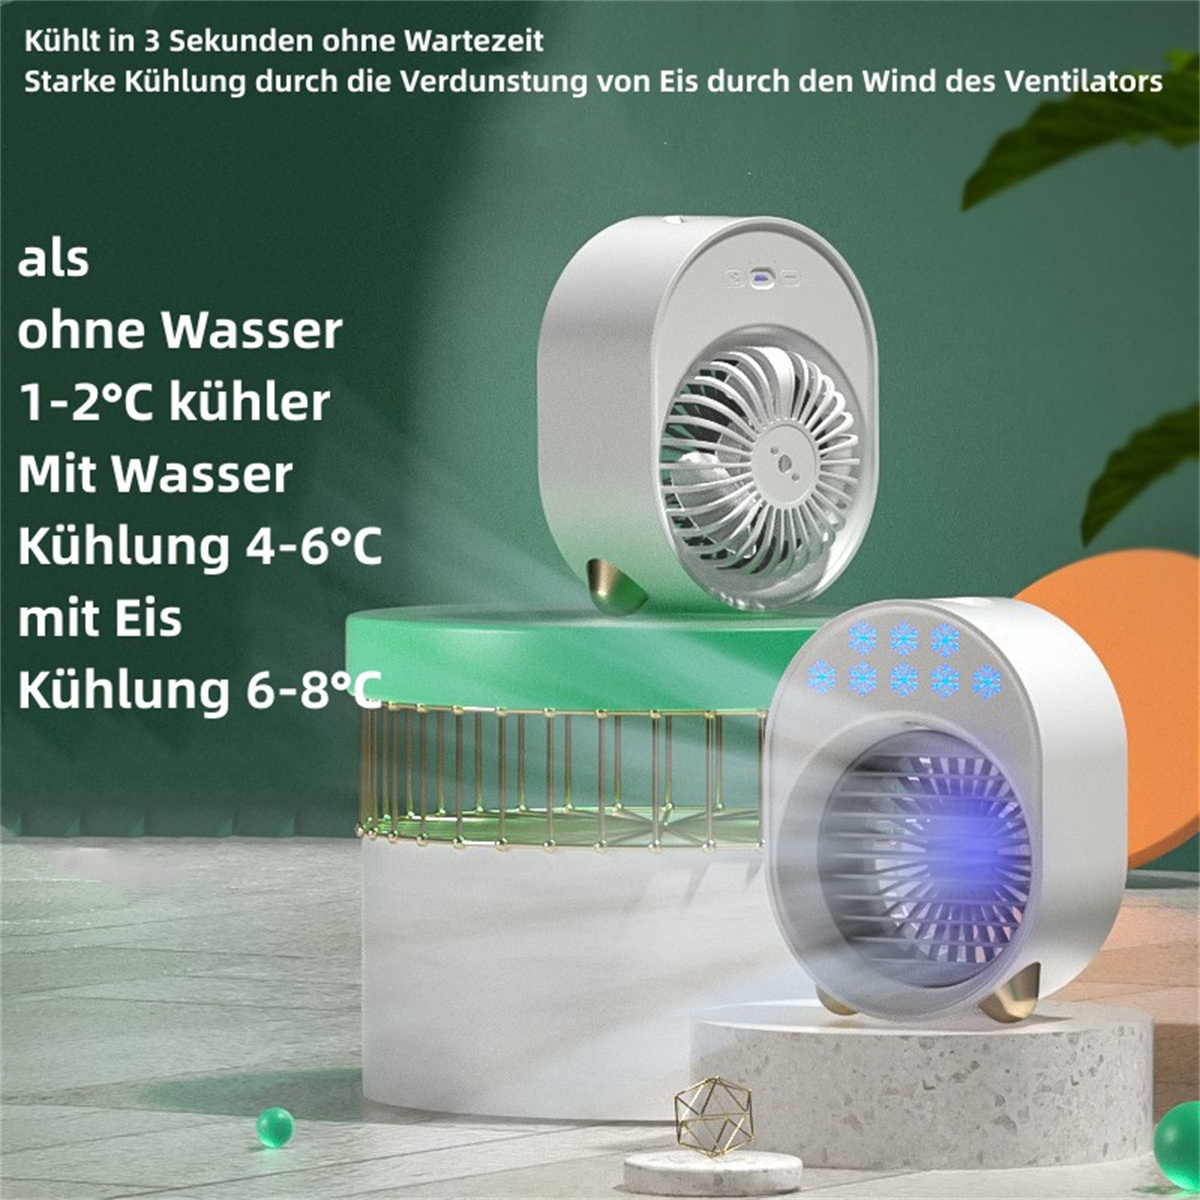 USB Ventilatoren Grün Grün SYNTEK Fan Convenient Kleine Chiller Fan Desktop-Klimaanlage